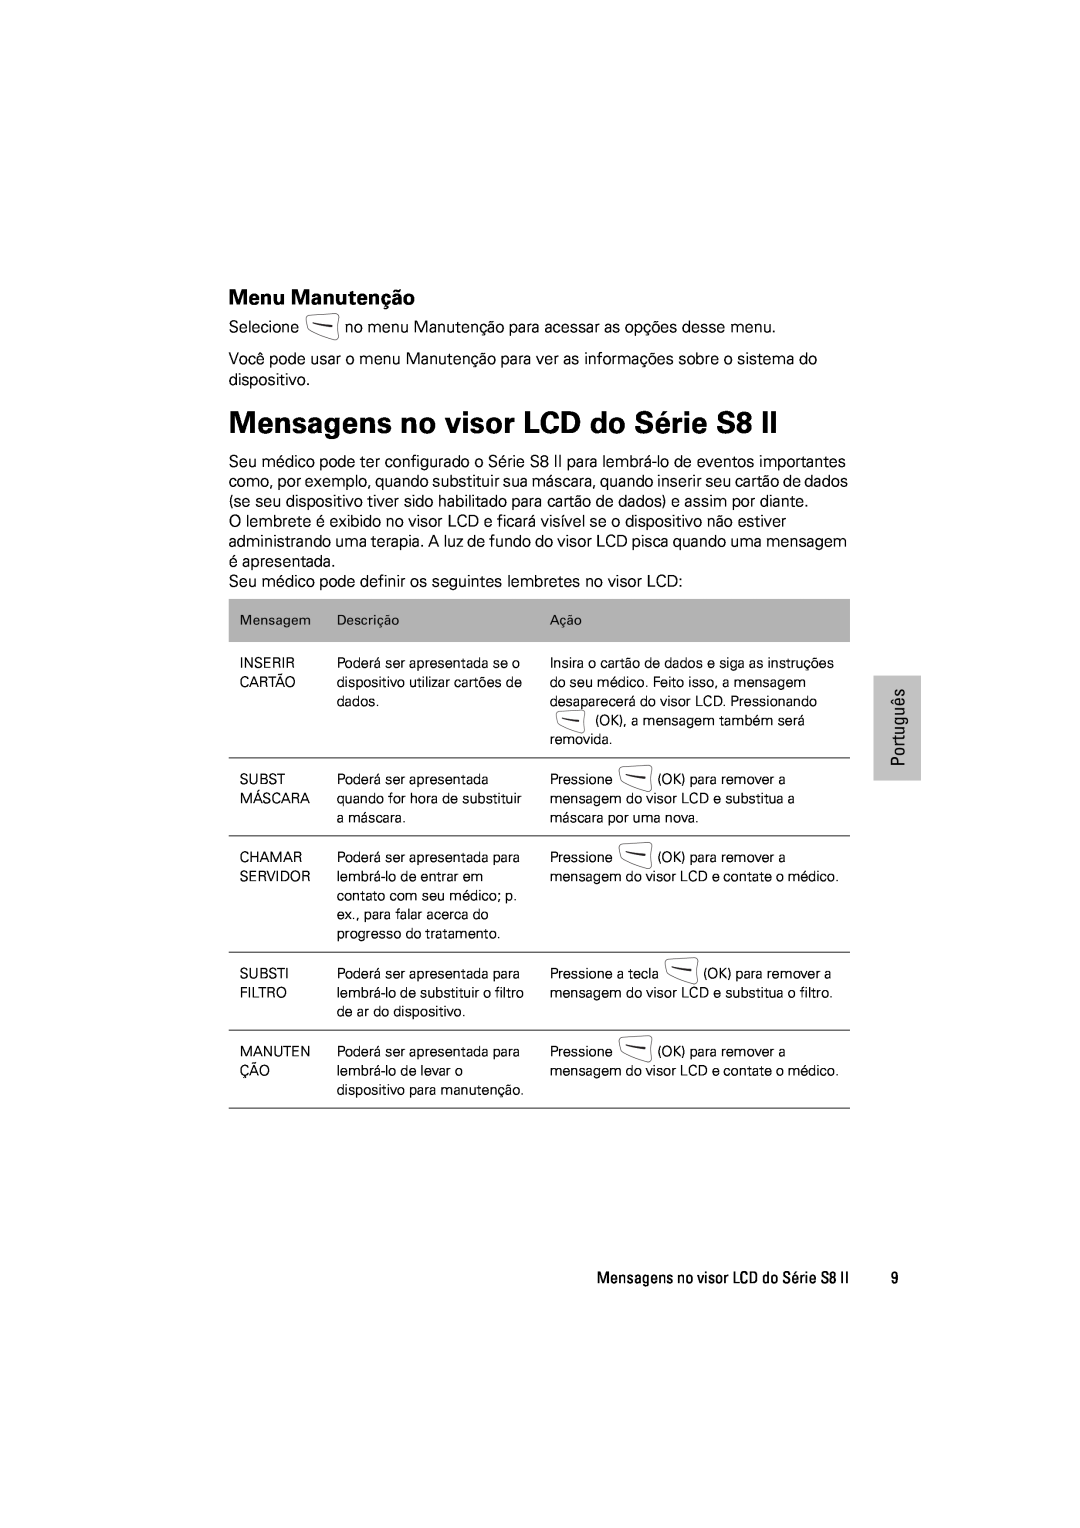 ResMed s8 manual Mensagens no visor LCD do Série S8, Menu Manutenção, Português 